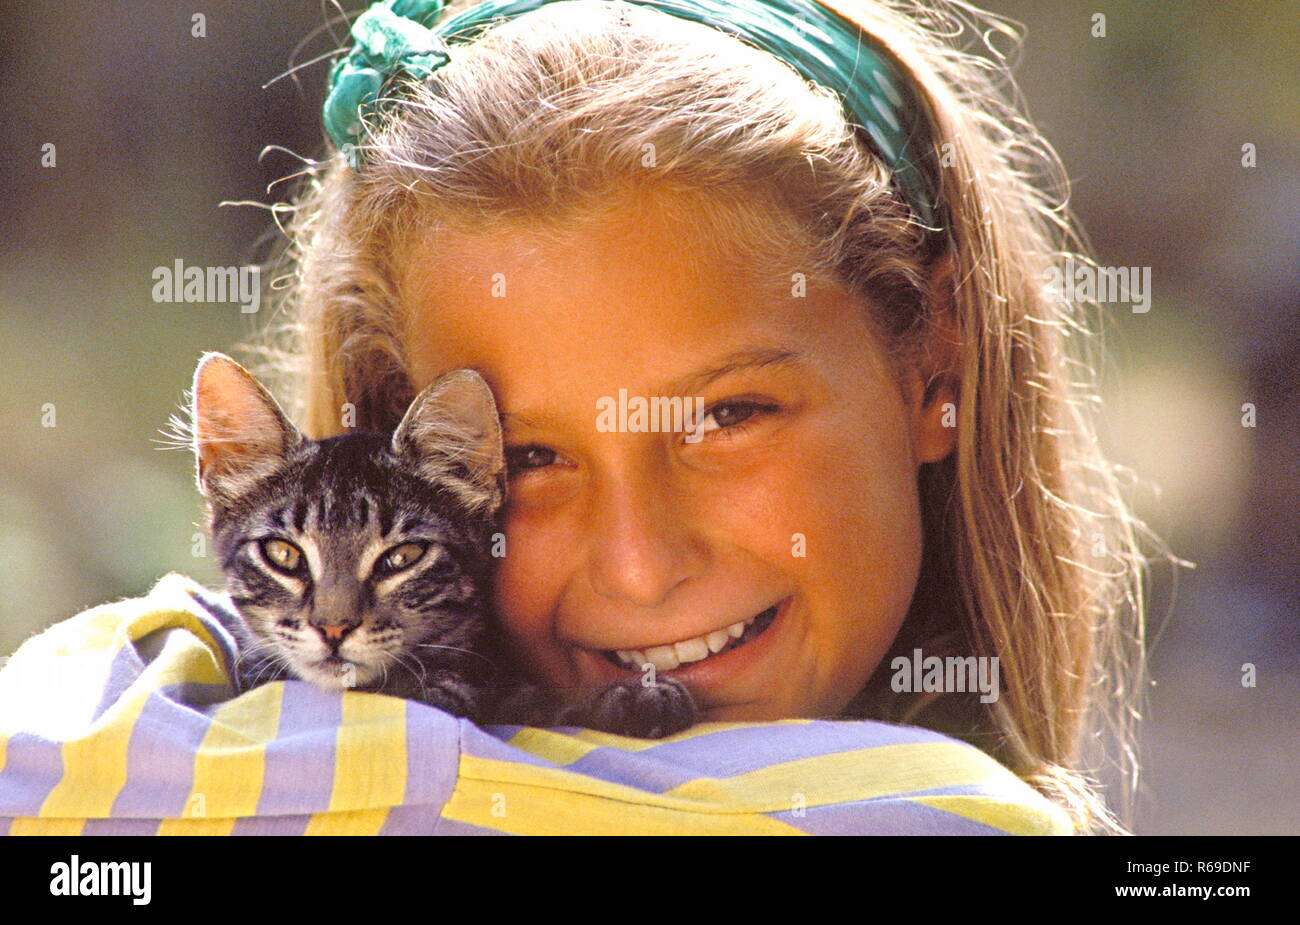 Portrait, laechelndes Maedchen mit kleiner Katze auf dem Arm Stock Photo